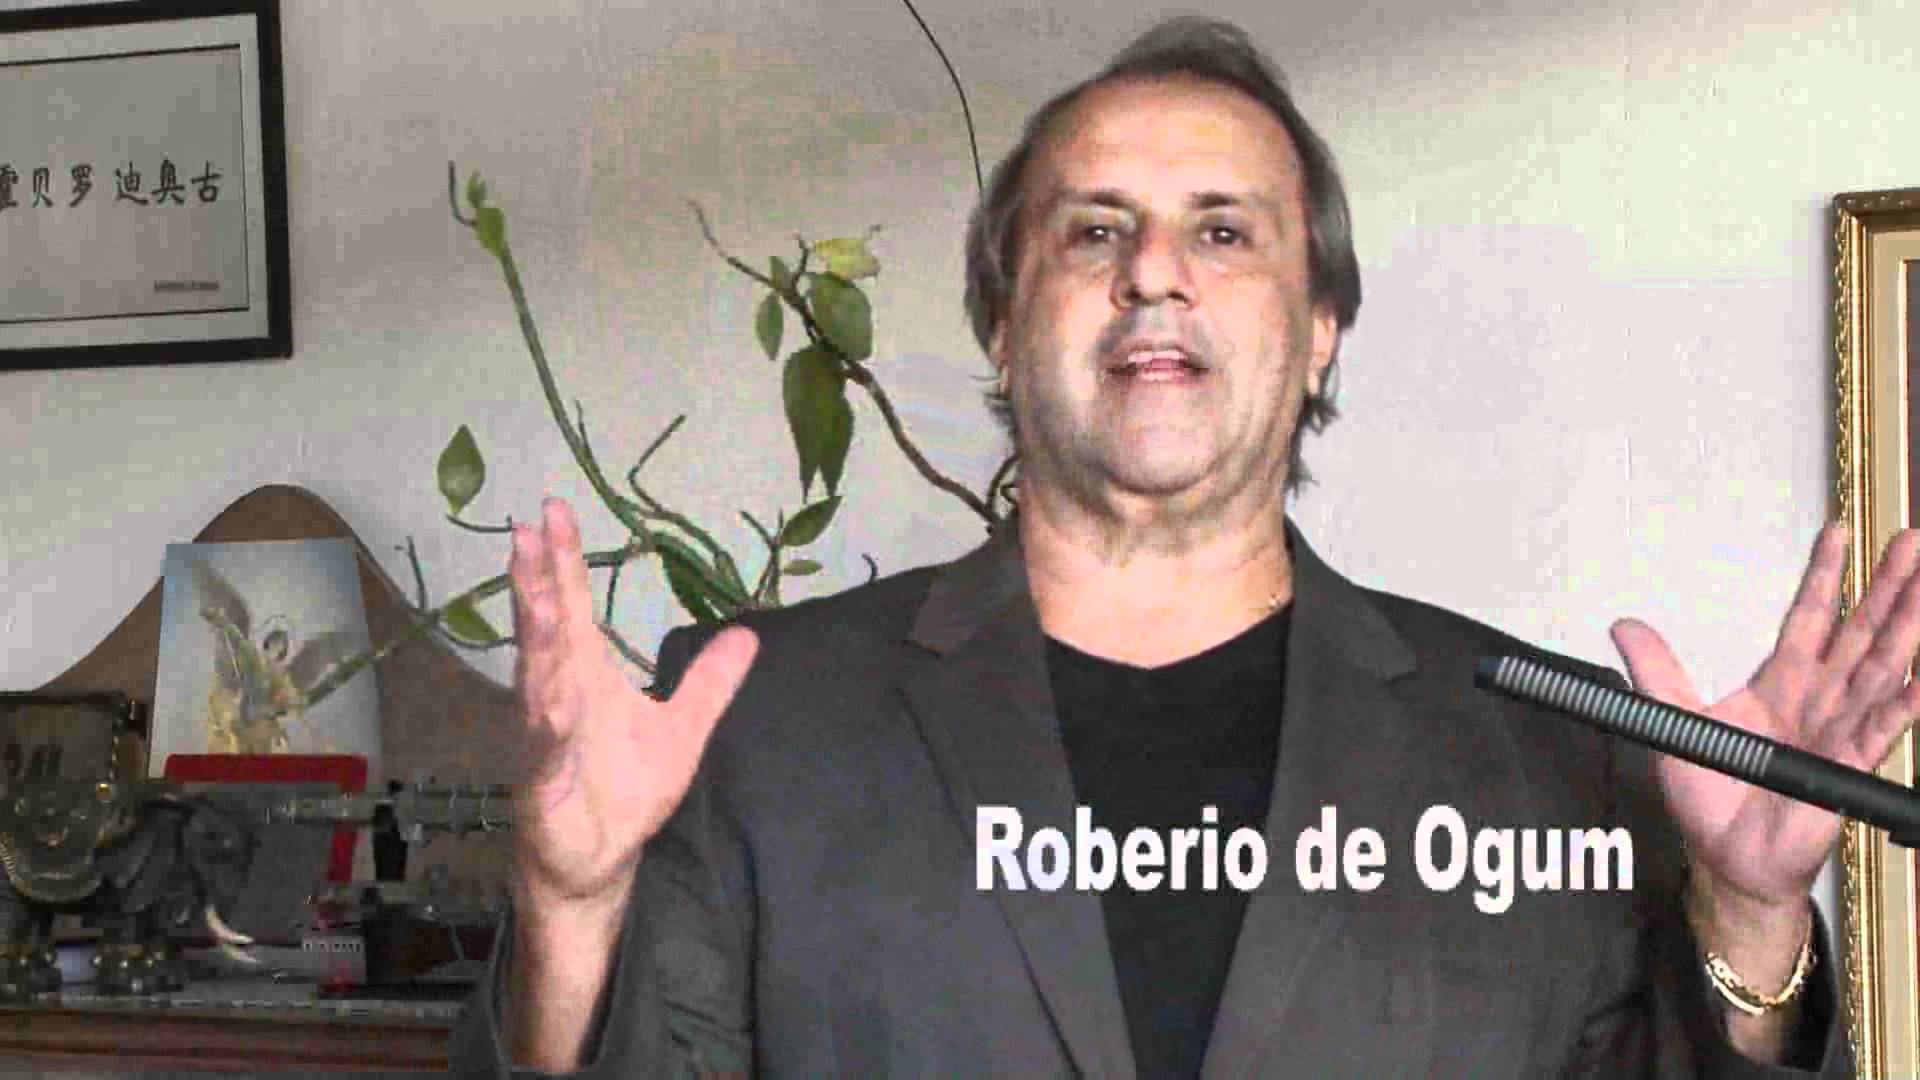 Vidente Robério de Ogum garante que em 2014, “O Brasil será o campeão do mundo de futebol”! (foto: Reprodução/YouTube)